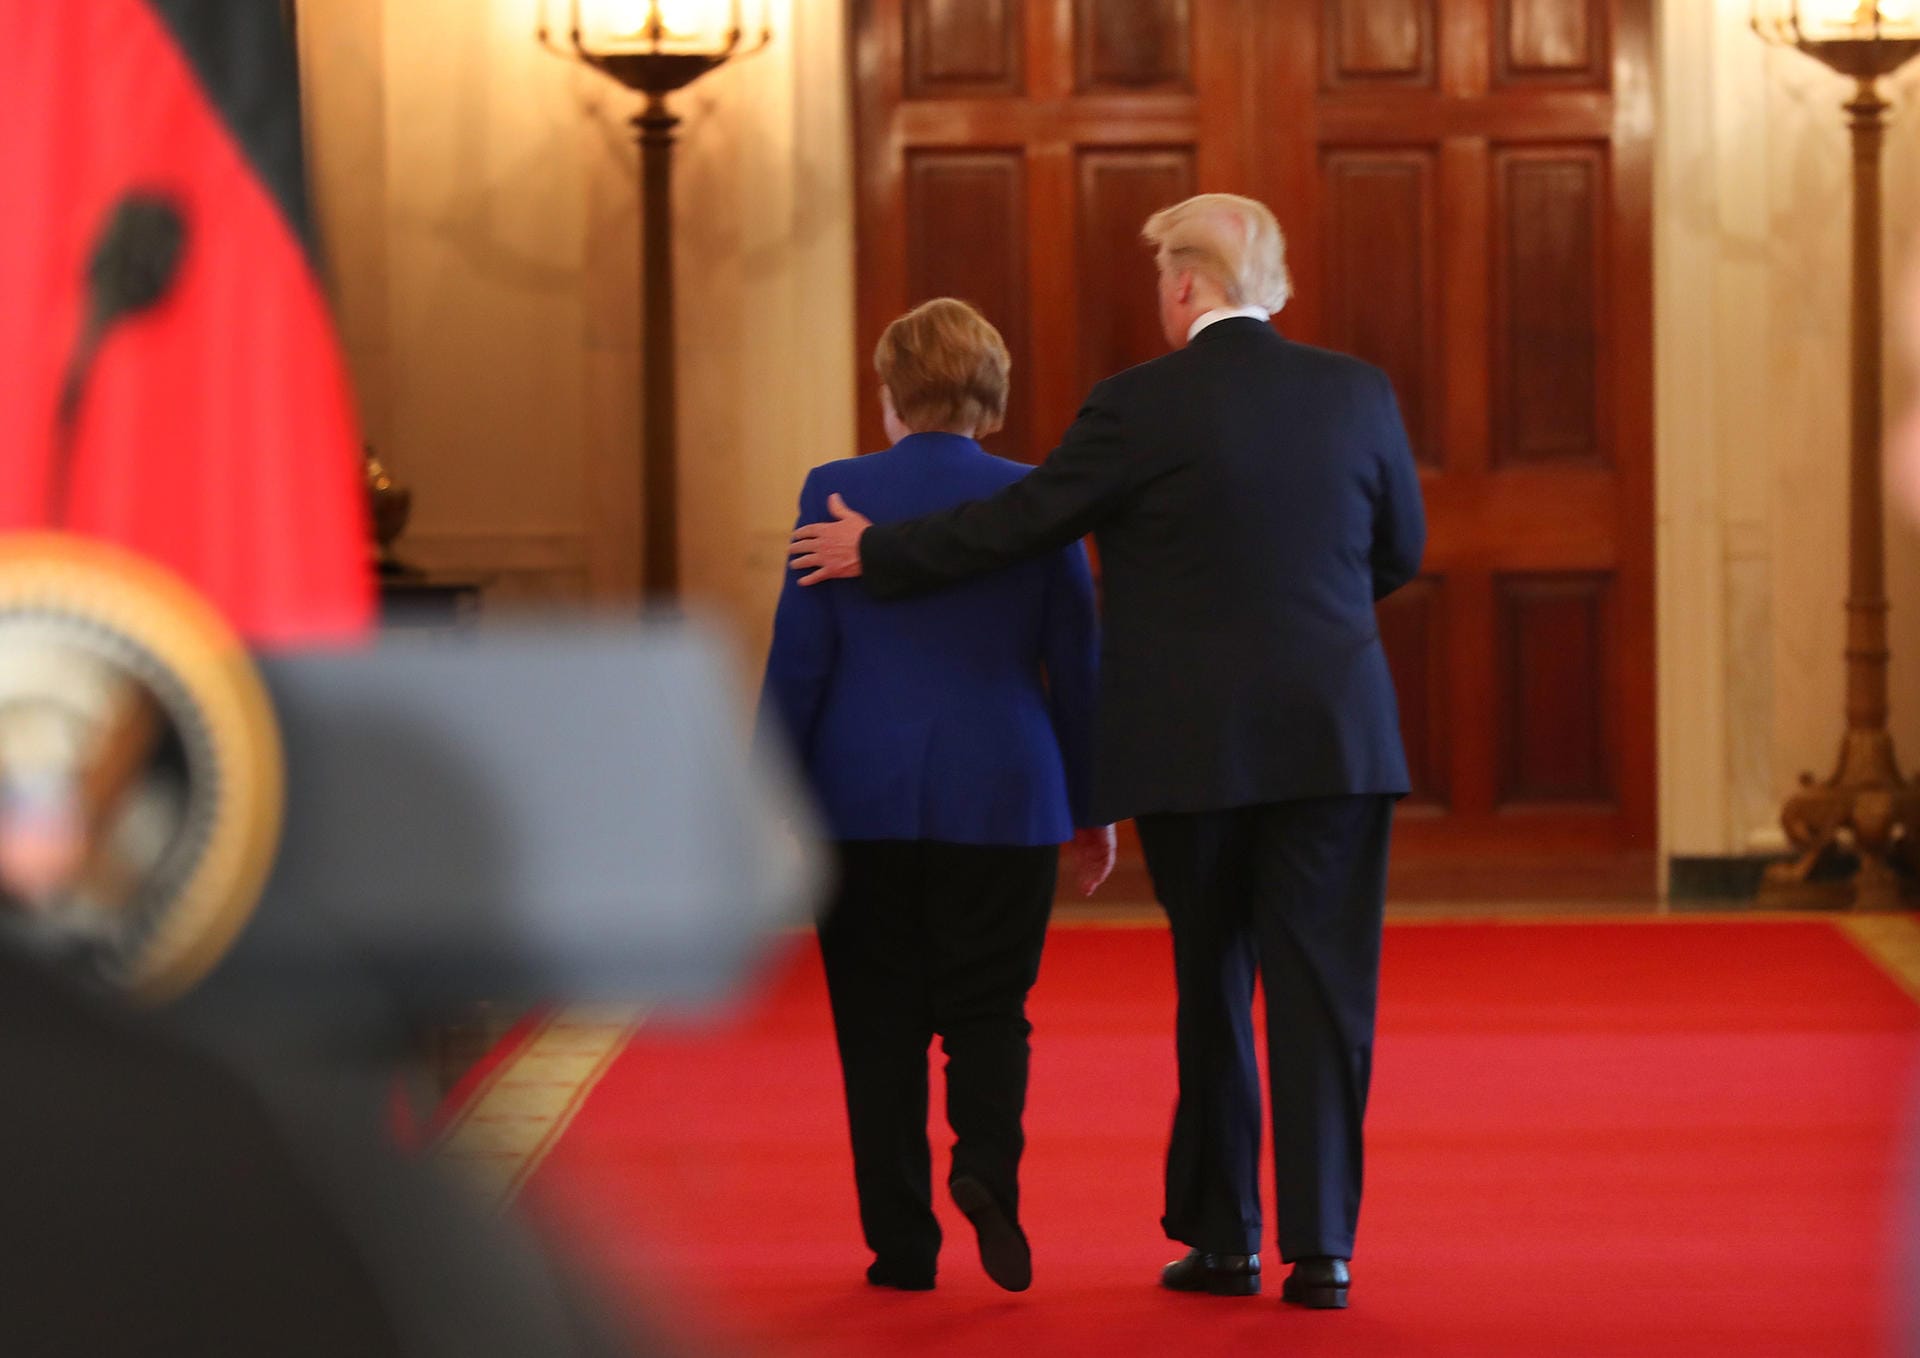 Die Probleme begleiten Angela Merkel auch auf dem Weg zurück nach Deutschland. Werden US-Strafzölle bald auch Deutschland treffen? Wird Trump das Atom-Abkommen mit dem Iran aufkündigen? Für ein weiteres Treffen bleiben mehr als genug Themen.